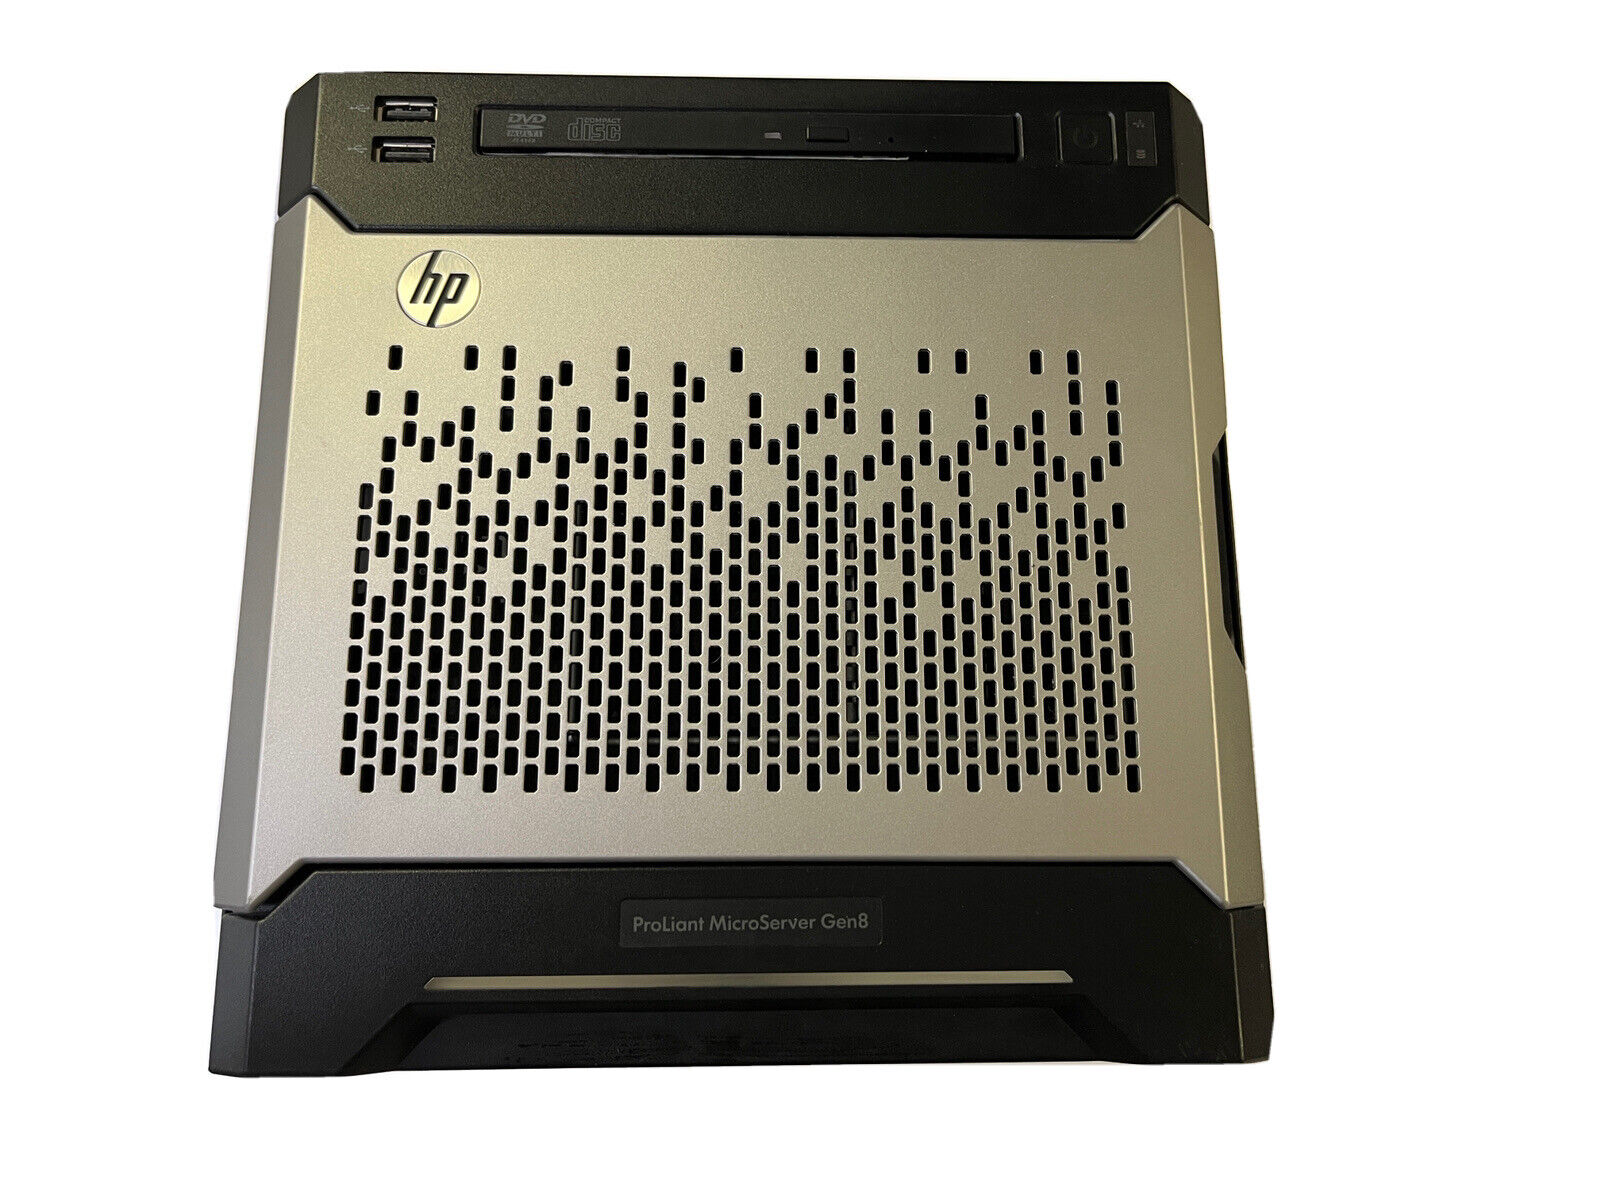 HP Proliant MicroServer Gen8 Xeon E3-1220L V2 2.3 Ghz 16GB iLO TPM rare DVD-ROM